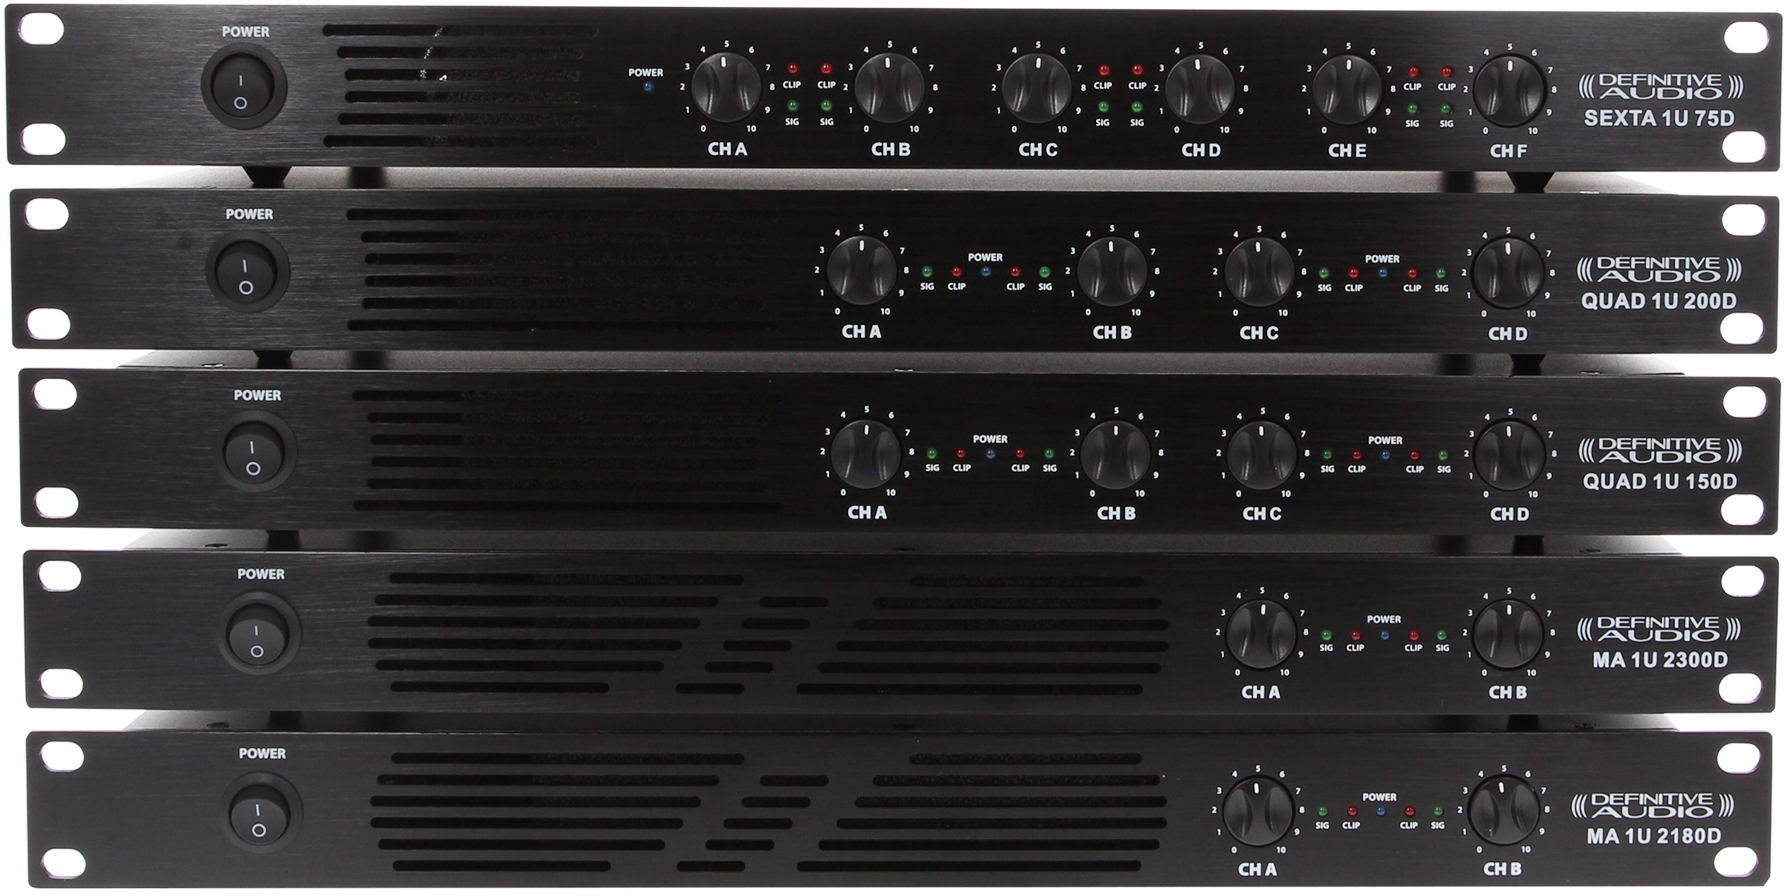 Definitive Audio Quad 1u 200d - Multiple channels power amplifier - Variation 1